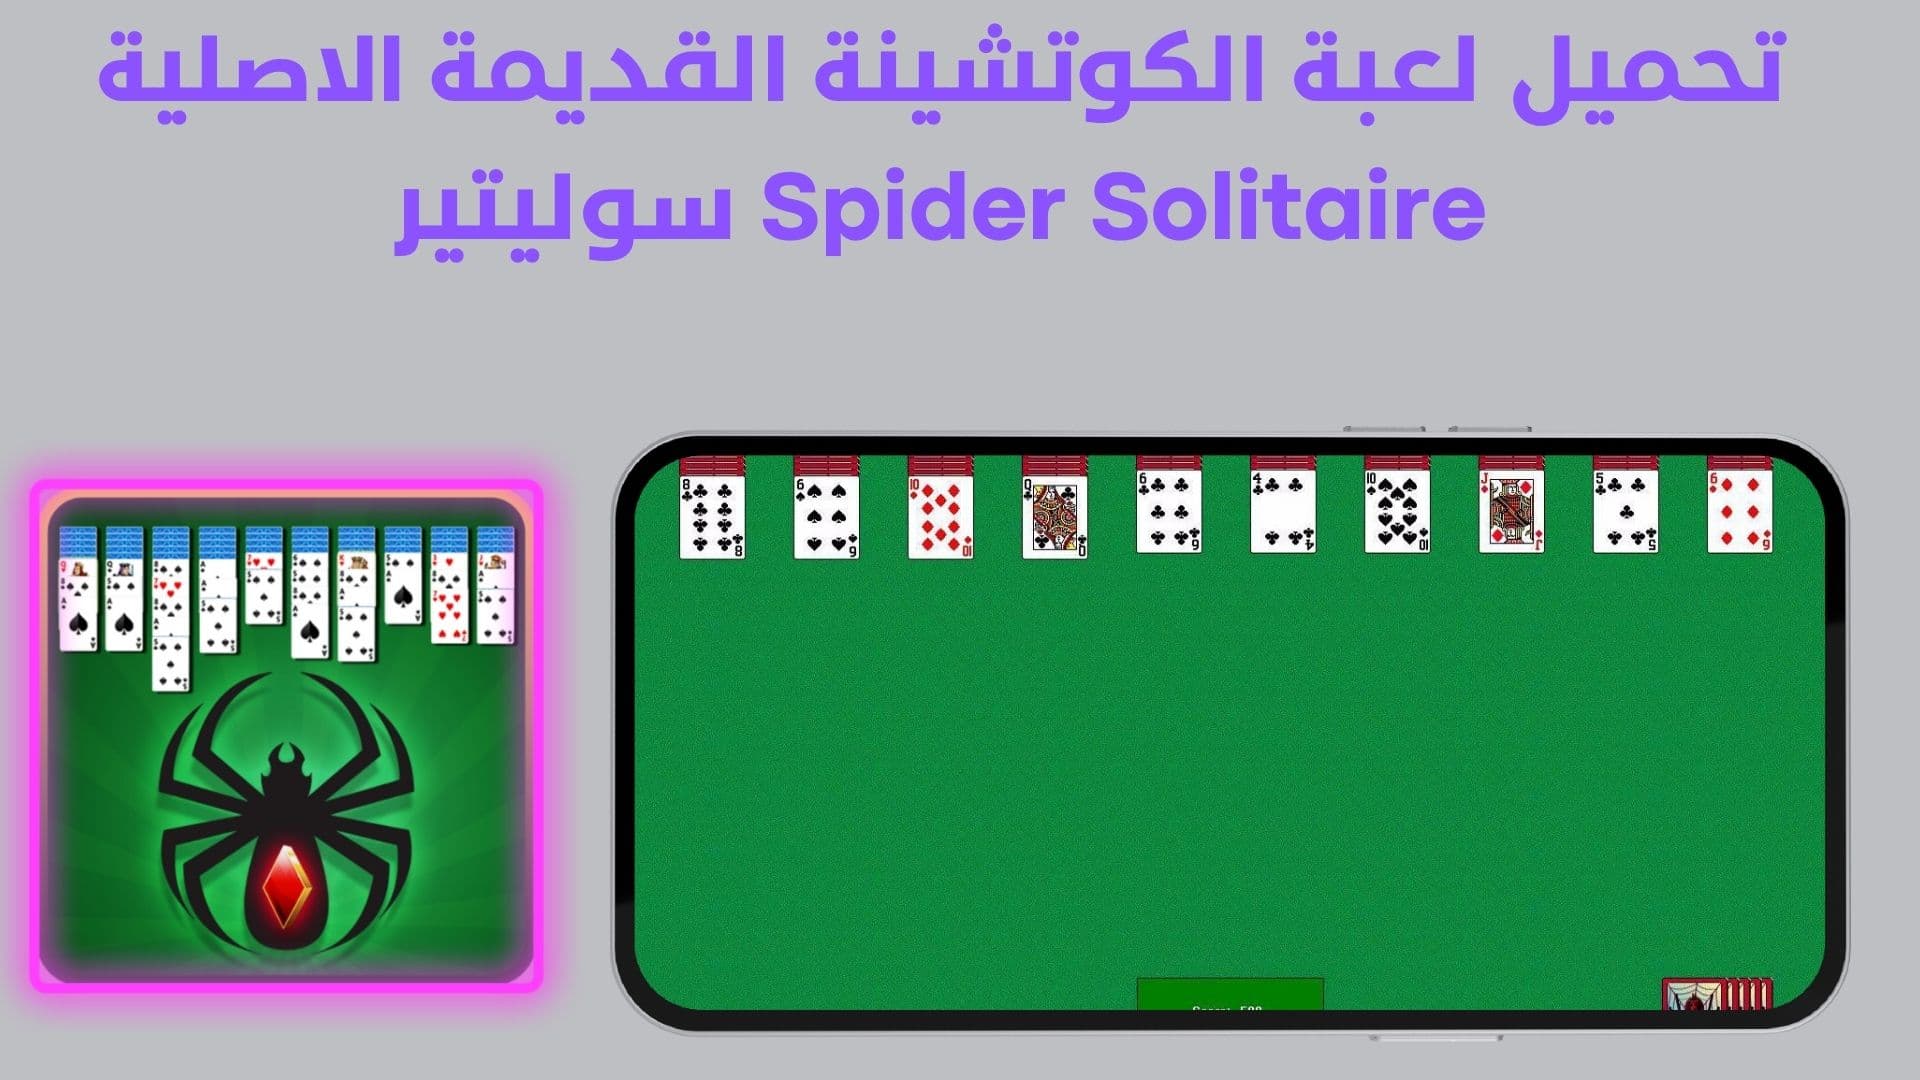 تحميل لعبة الكوتشينة القديمة الاصلية Spider Solitaire سوليتير